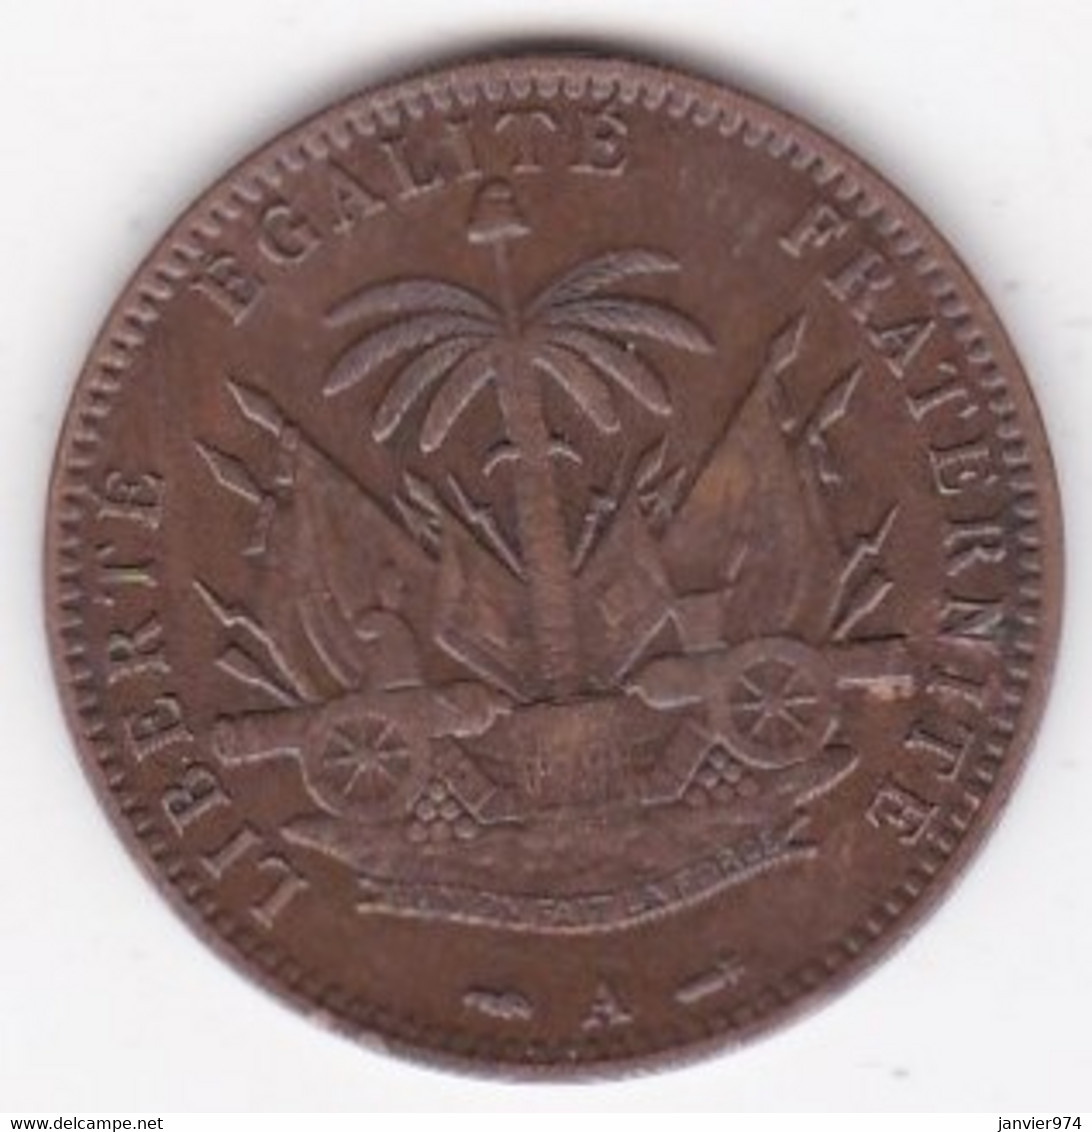 REPUBLIQUE D'HAITI. 1 CENTIME 1886 Paris AN 83. BRONZE .KM# 48 - Haiti